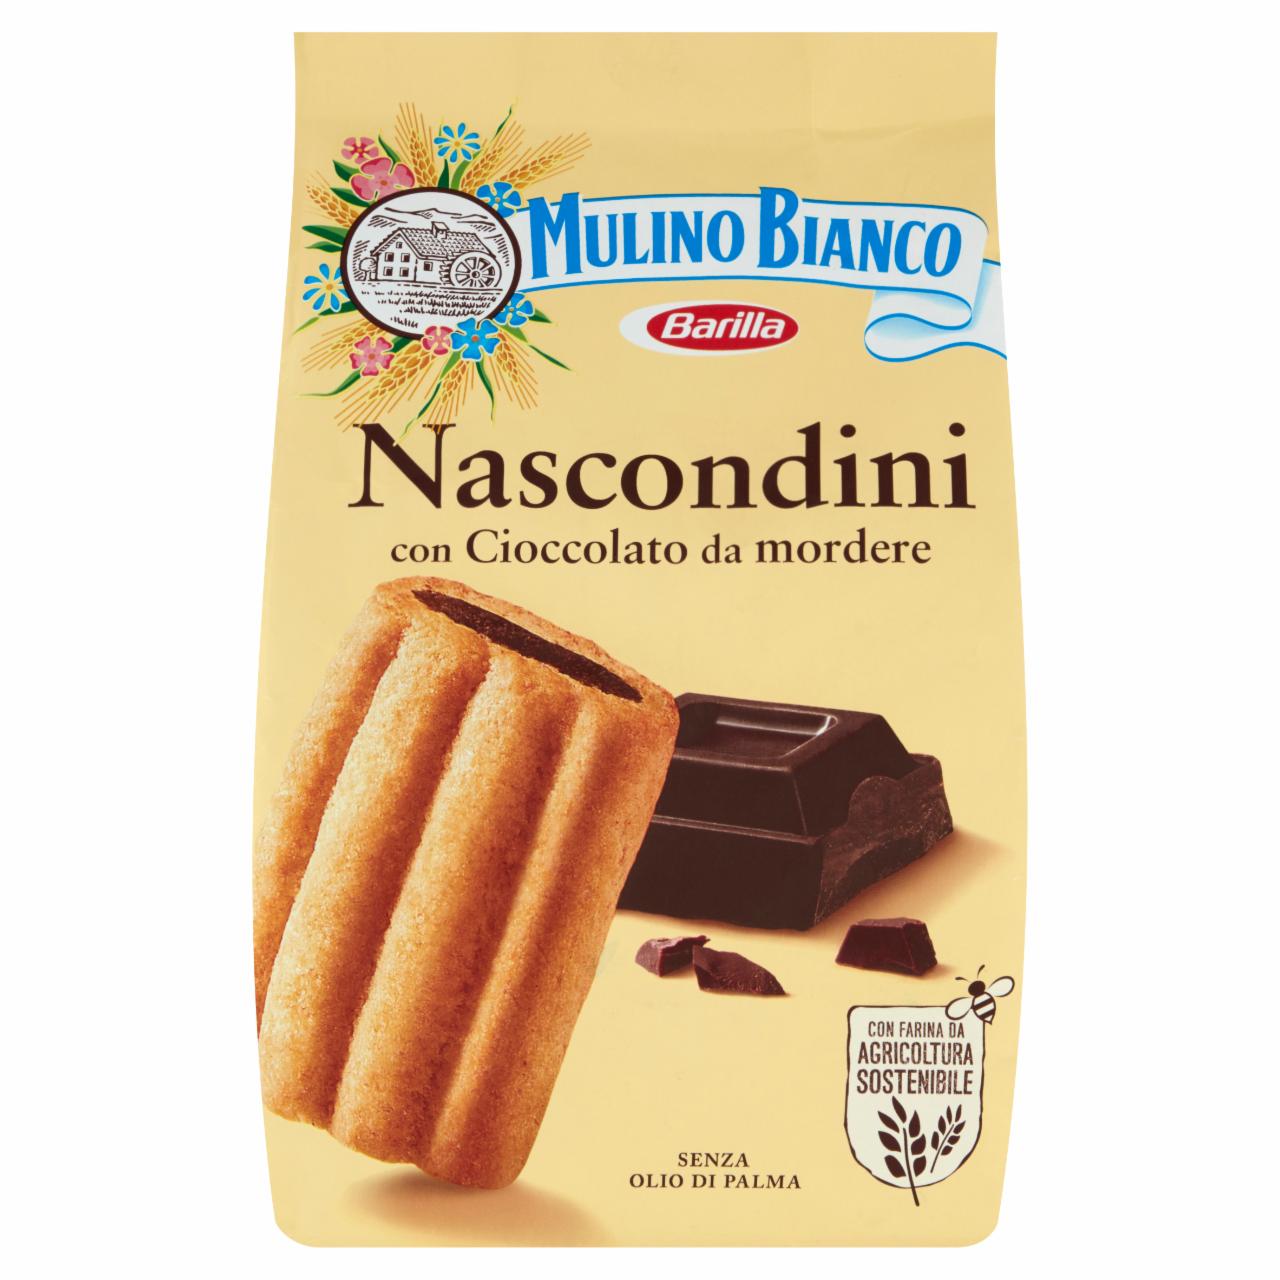 Képek - Mulino Bianco Nascondini csokoládés omlós keksz 330 g